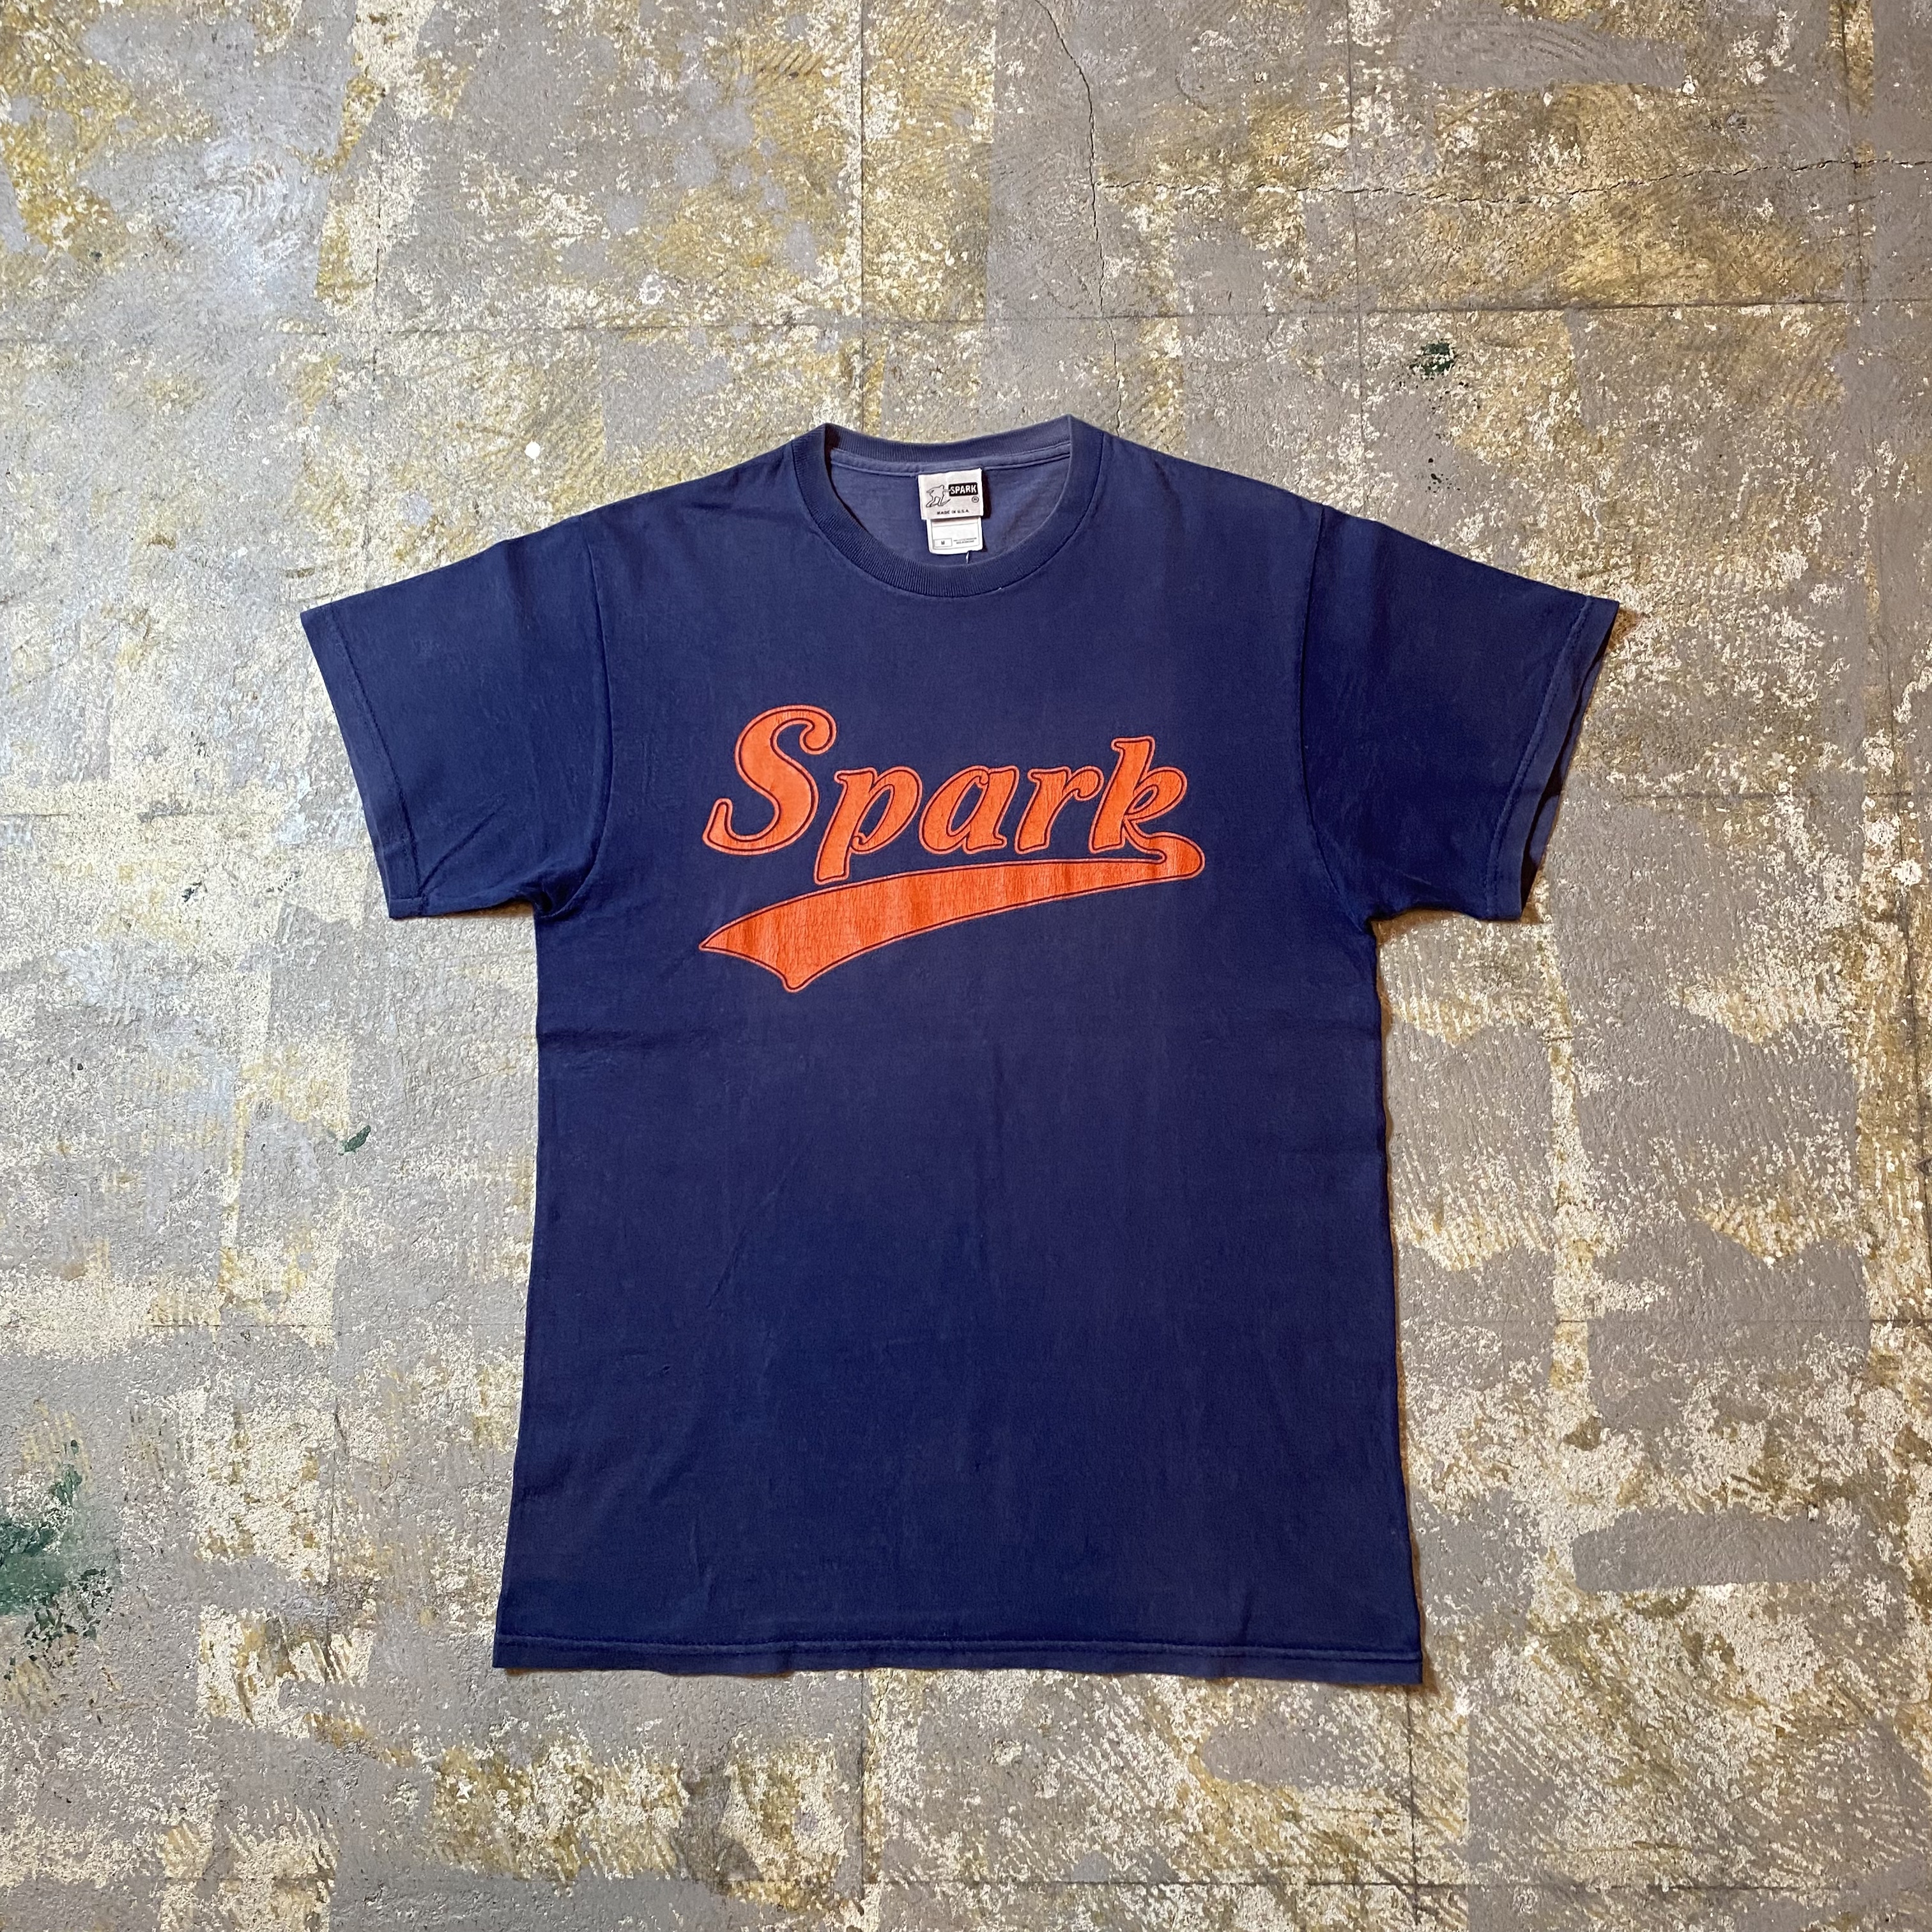 90s- spark スパーク tシャツ USA製 M ネイビー フルーツボディ ...